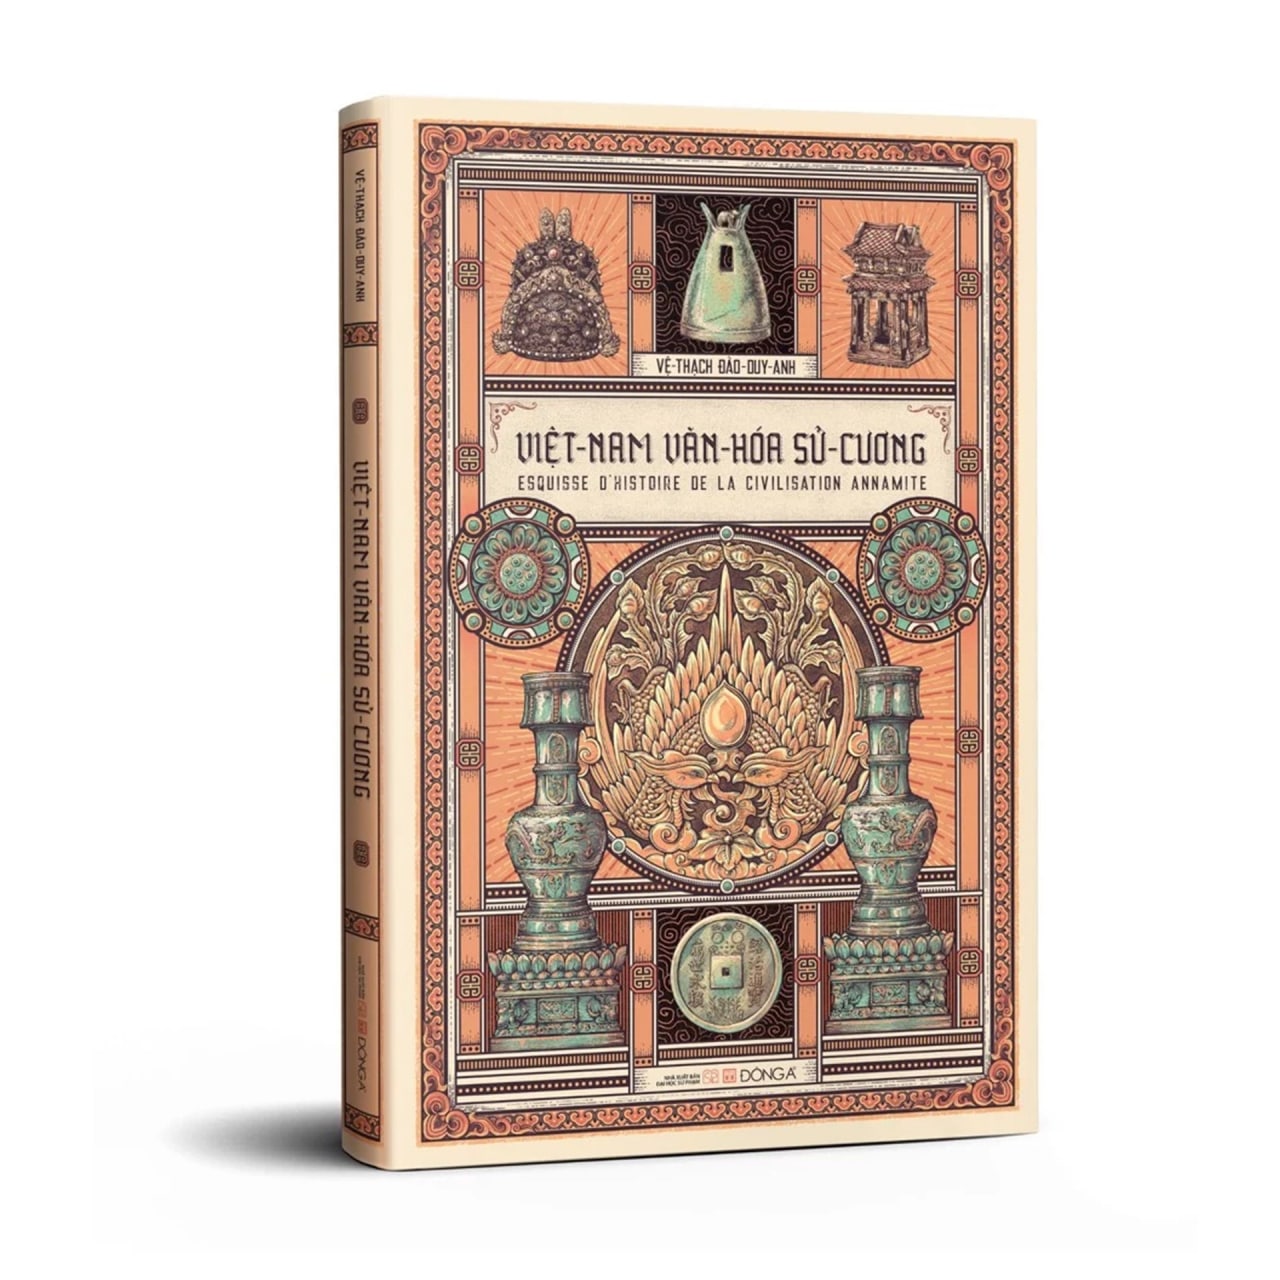 Combo 2 cuốn: Việt Nam sử lược (Bìa cứng - Ấn bản kỉ niệm 100 năm xuất bản lần đầu) + Việt Nam văn hoá sử cương